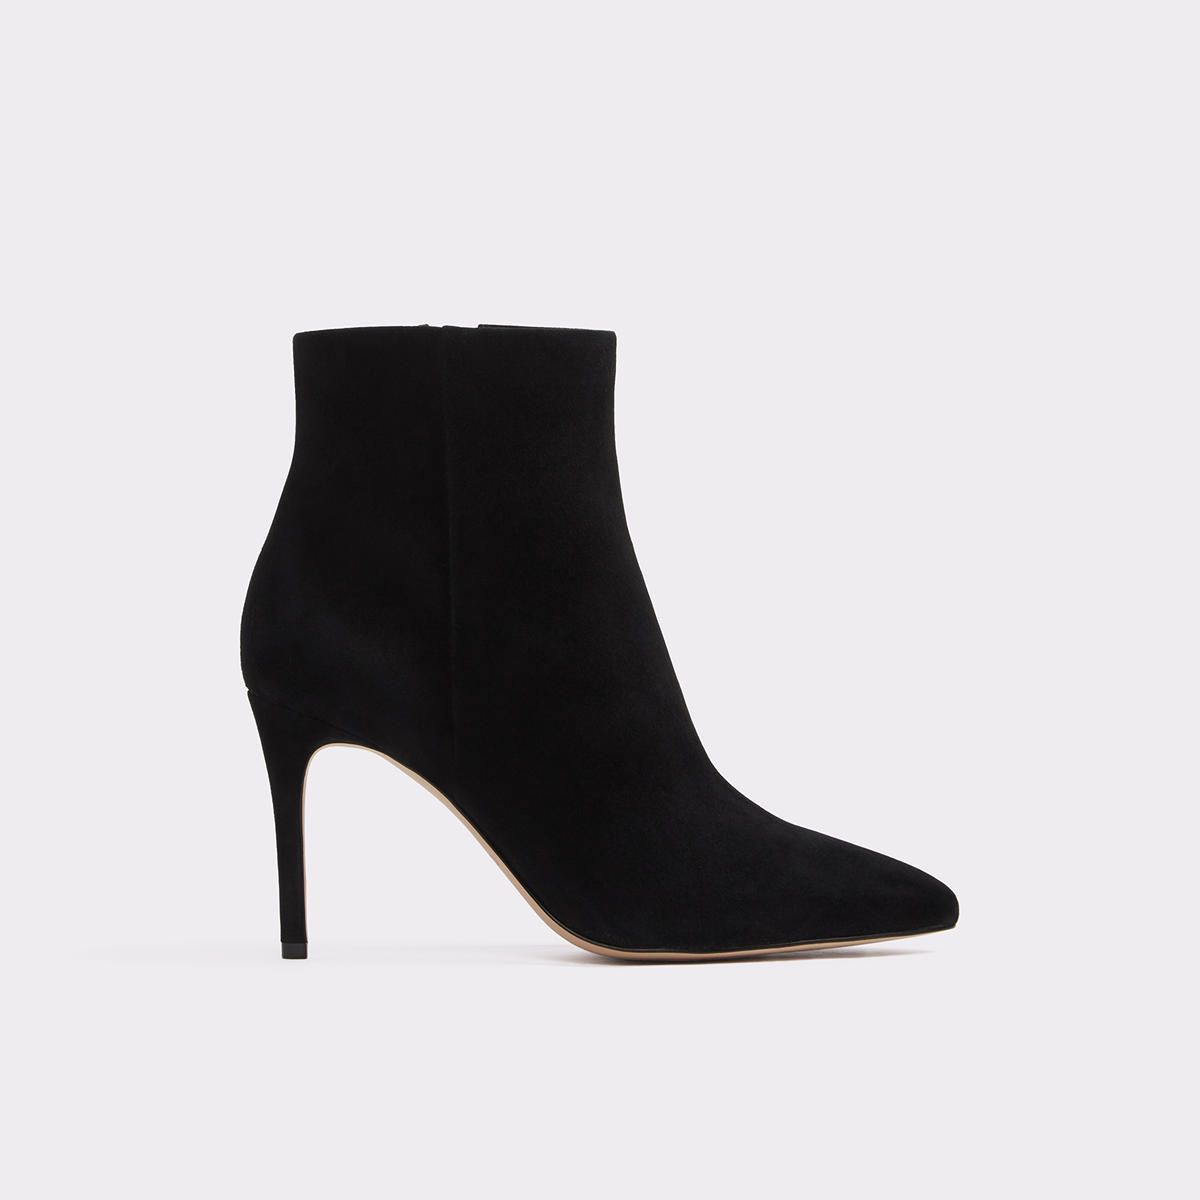 Wiema Black Leather Suede Women's Ankle boots | Aldoshoes.com US | Aldo Shoes (US)